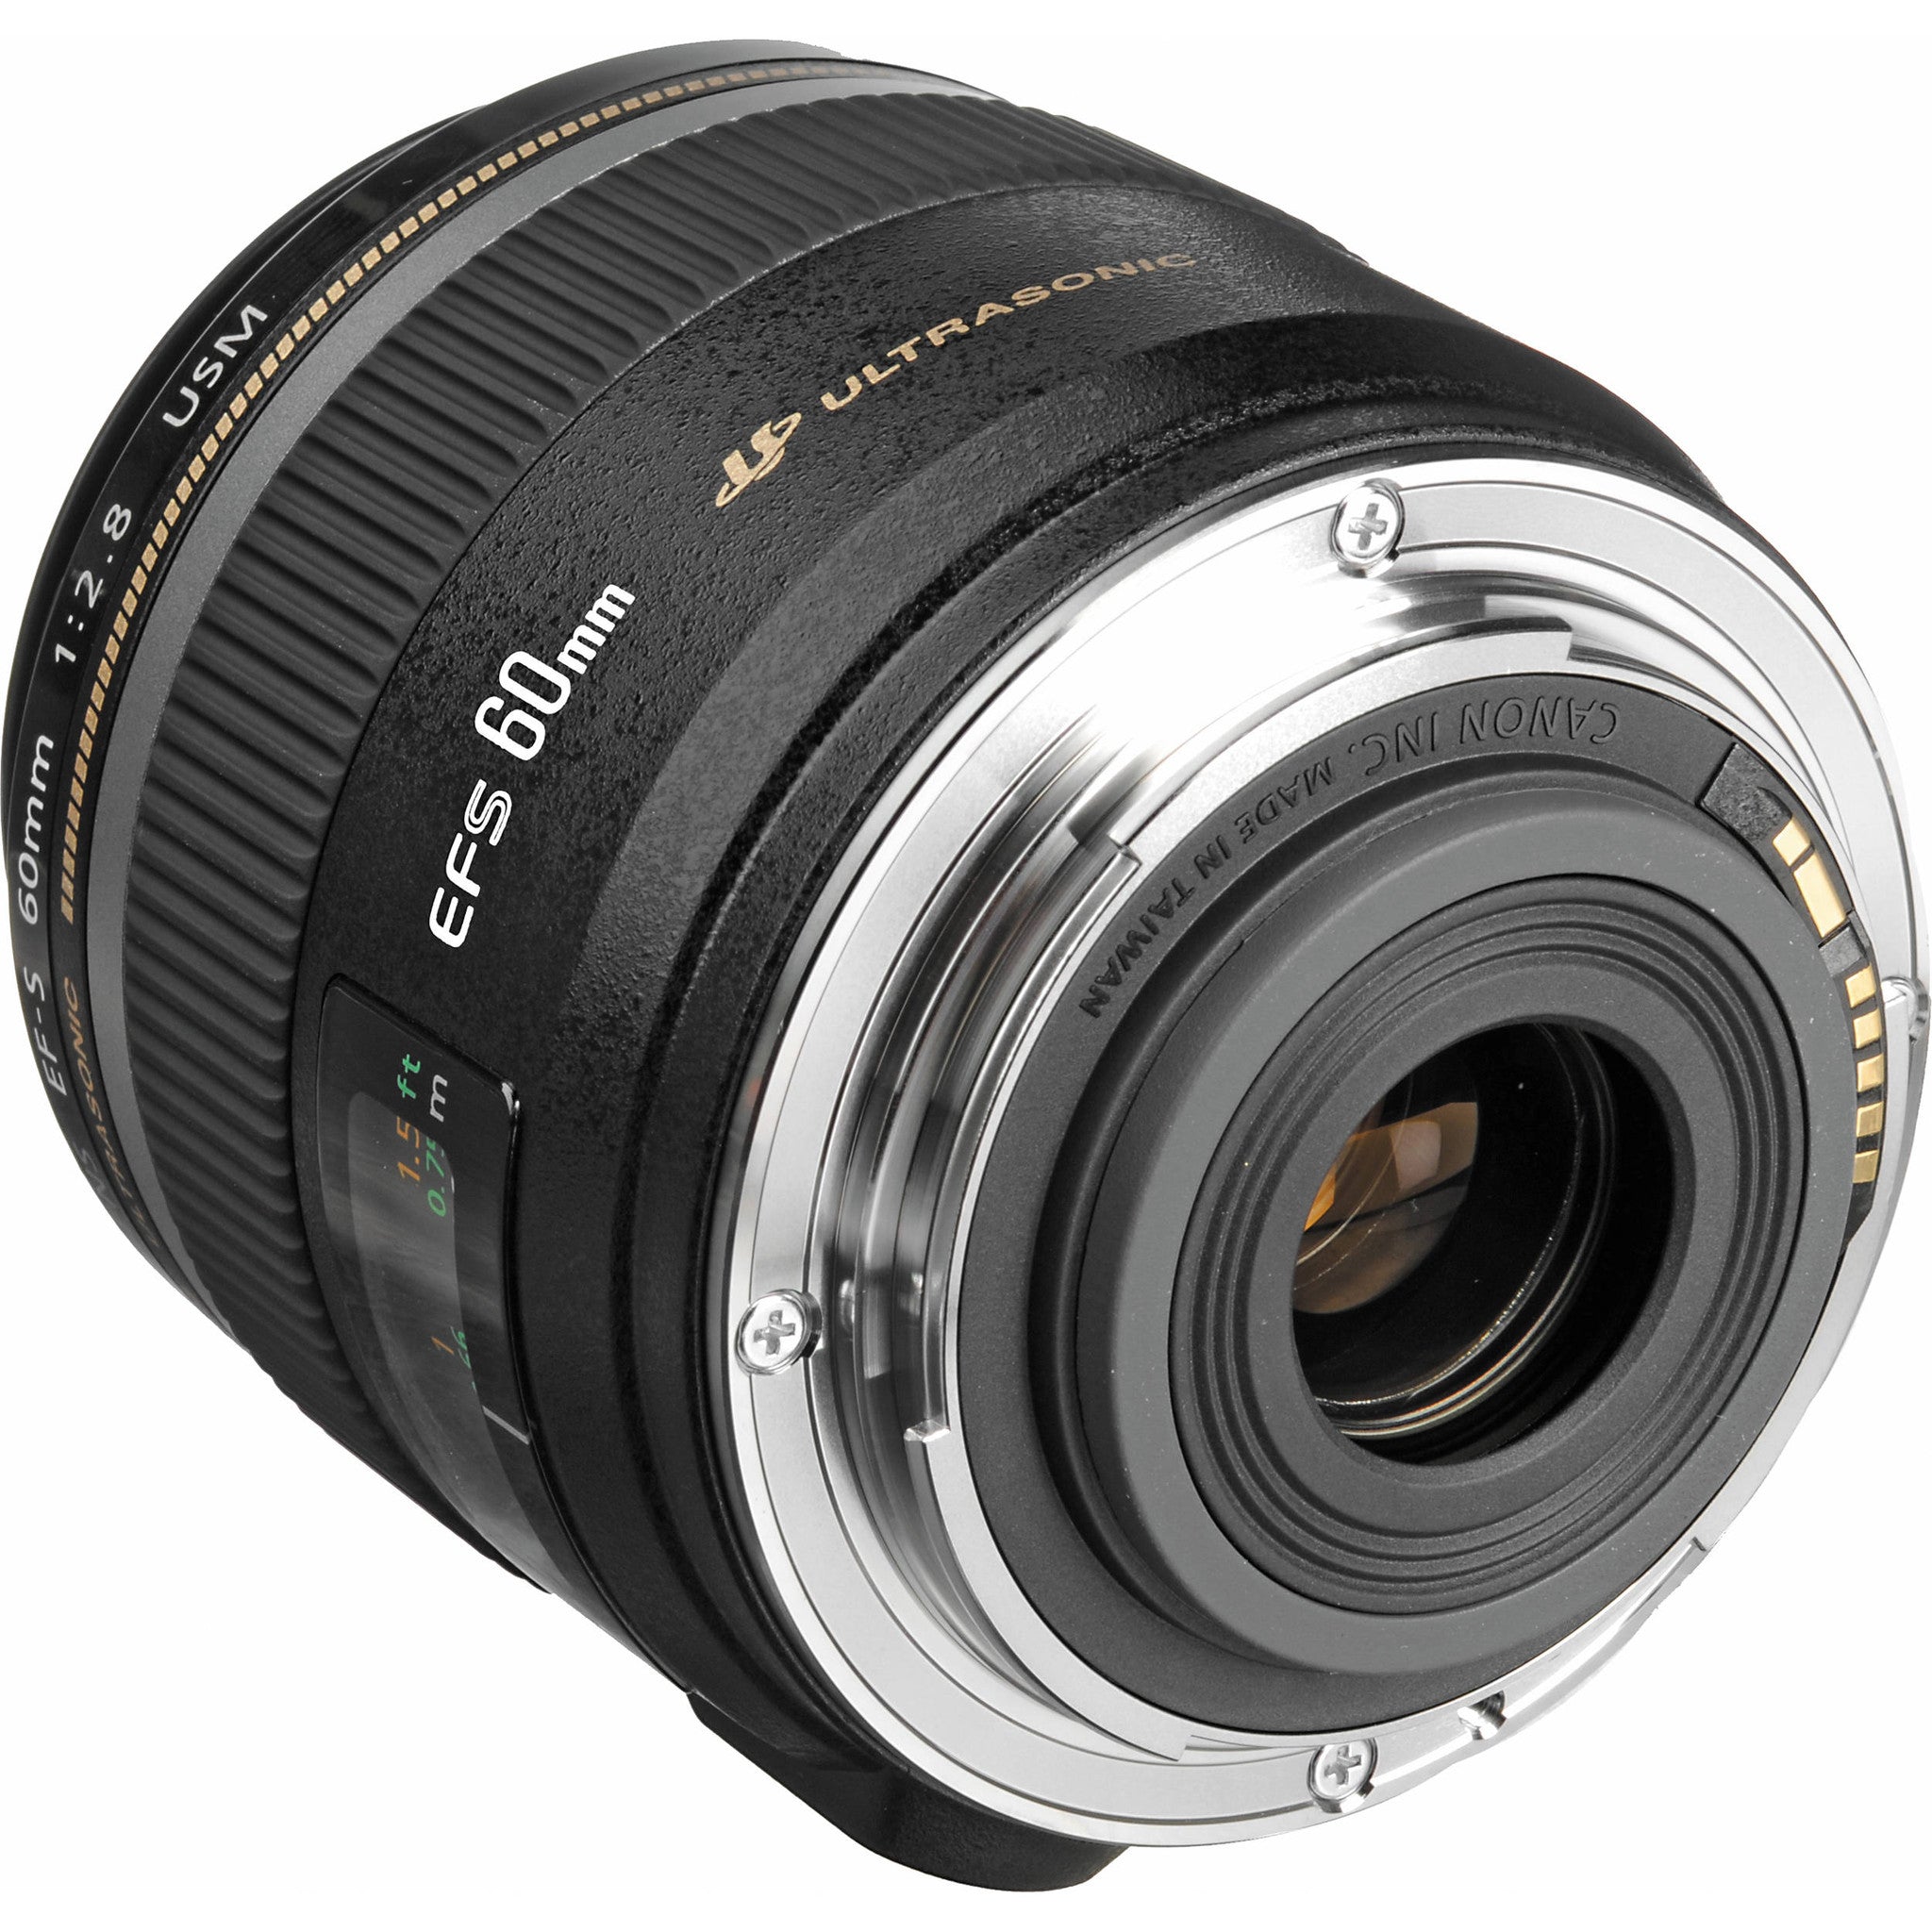 Canon EF-S 60mm f2.8 Macro USM Lens, lenses slr lenses, Canon - Pictureline  - 3